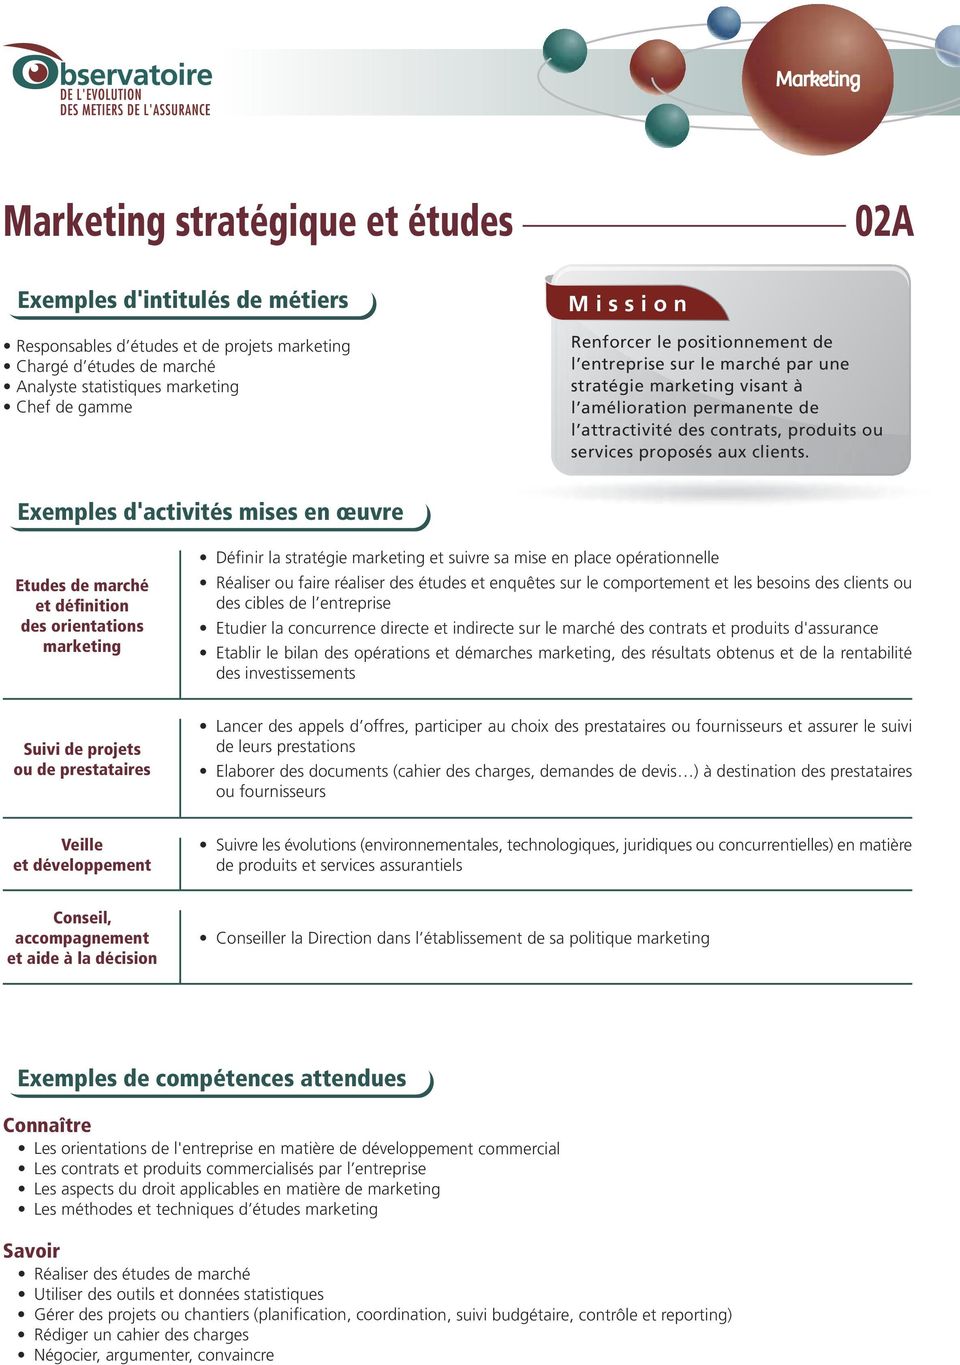 Exemples d'activités mises en œuvre Etudes de marché et définition des orientations marketing Définir la stratégie marketing et suivre sa mise en place opérationnelle Réaliser ou faire réaliser des